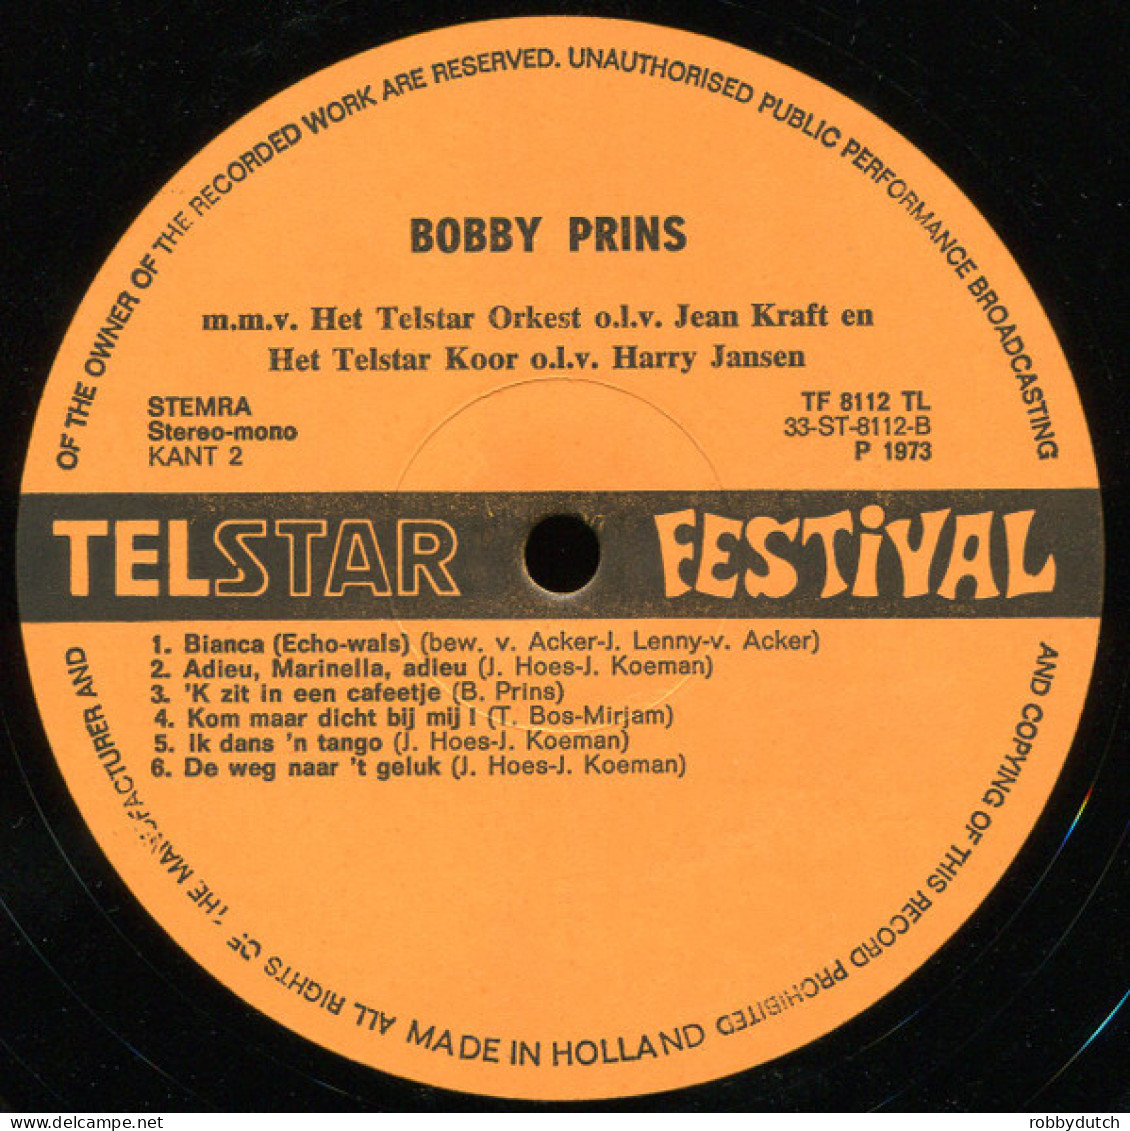 * LP *  BOBBY PRINS 2 : AY MARIA (Holland - Sonstige - Niederländische Musik